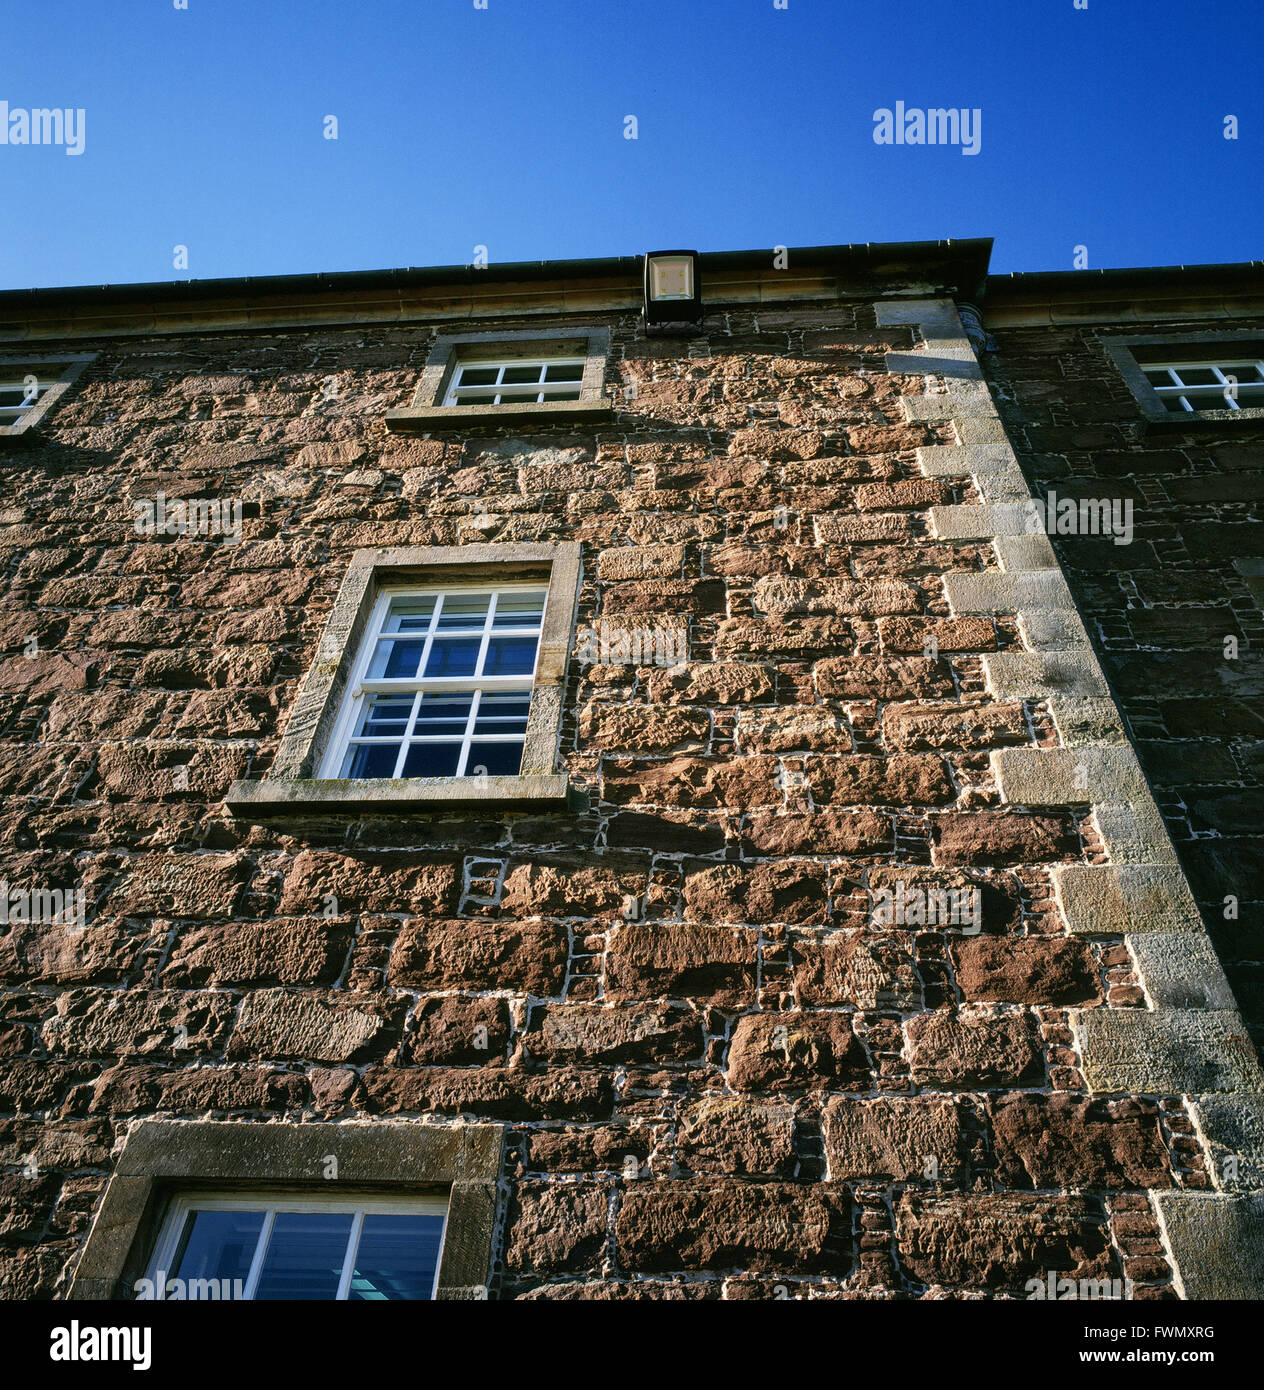 Détail architectural d'un bloc de casernes à fort George, près d'Inverness, en Écosse. Le fort du XVIIIe siècle est un chef-d'œuvre de l'ingénierie militaire Banque D'Images